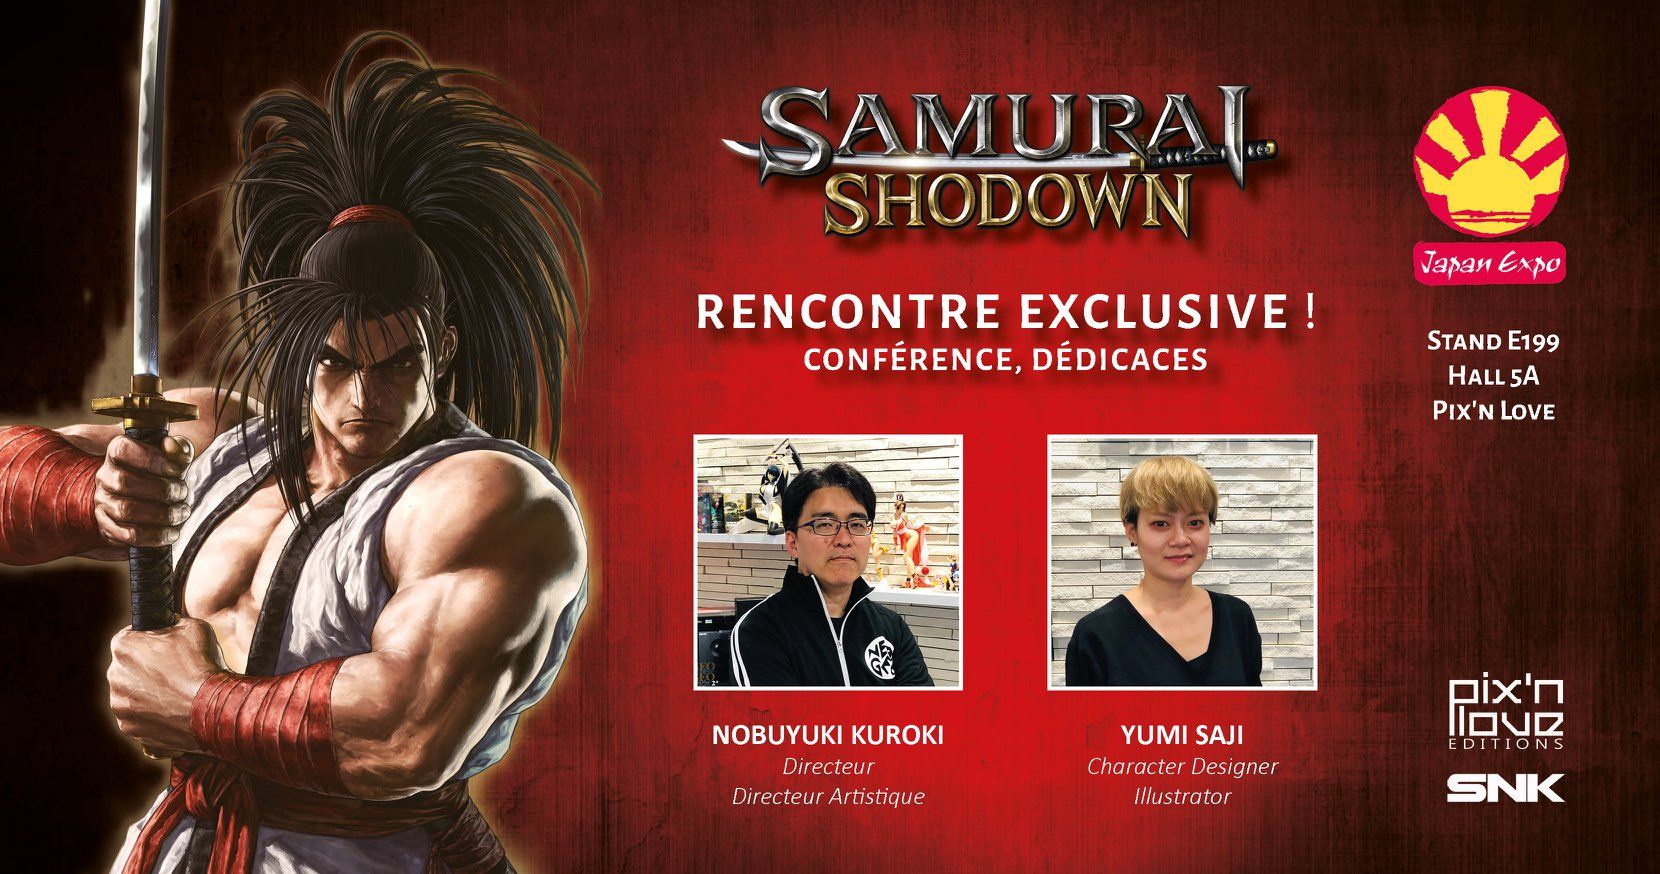 samurai-showdown-invites-je.jpg